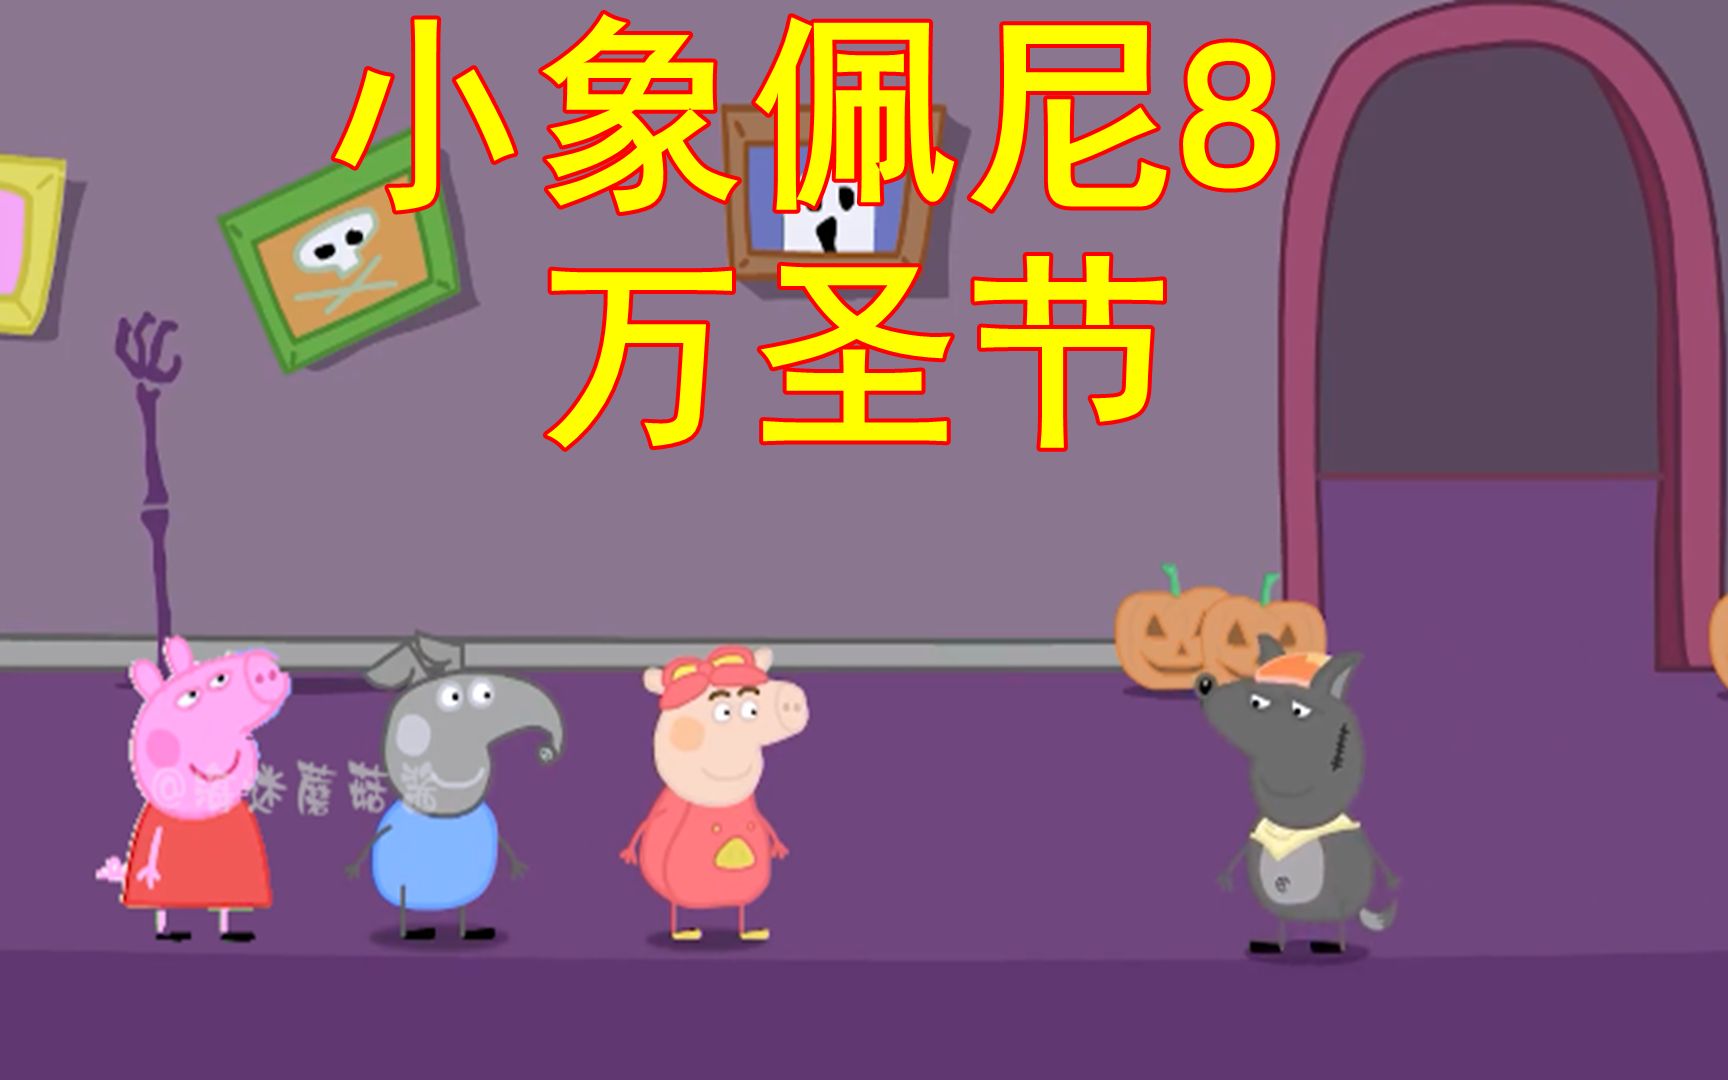 活动 小象佩尼8:猪猪侠,佩尼和小猪佩琪一起过万圣节,最后的神操作亮